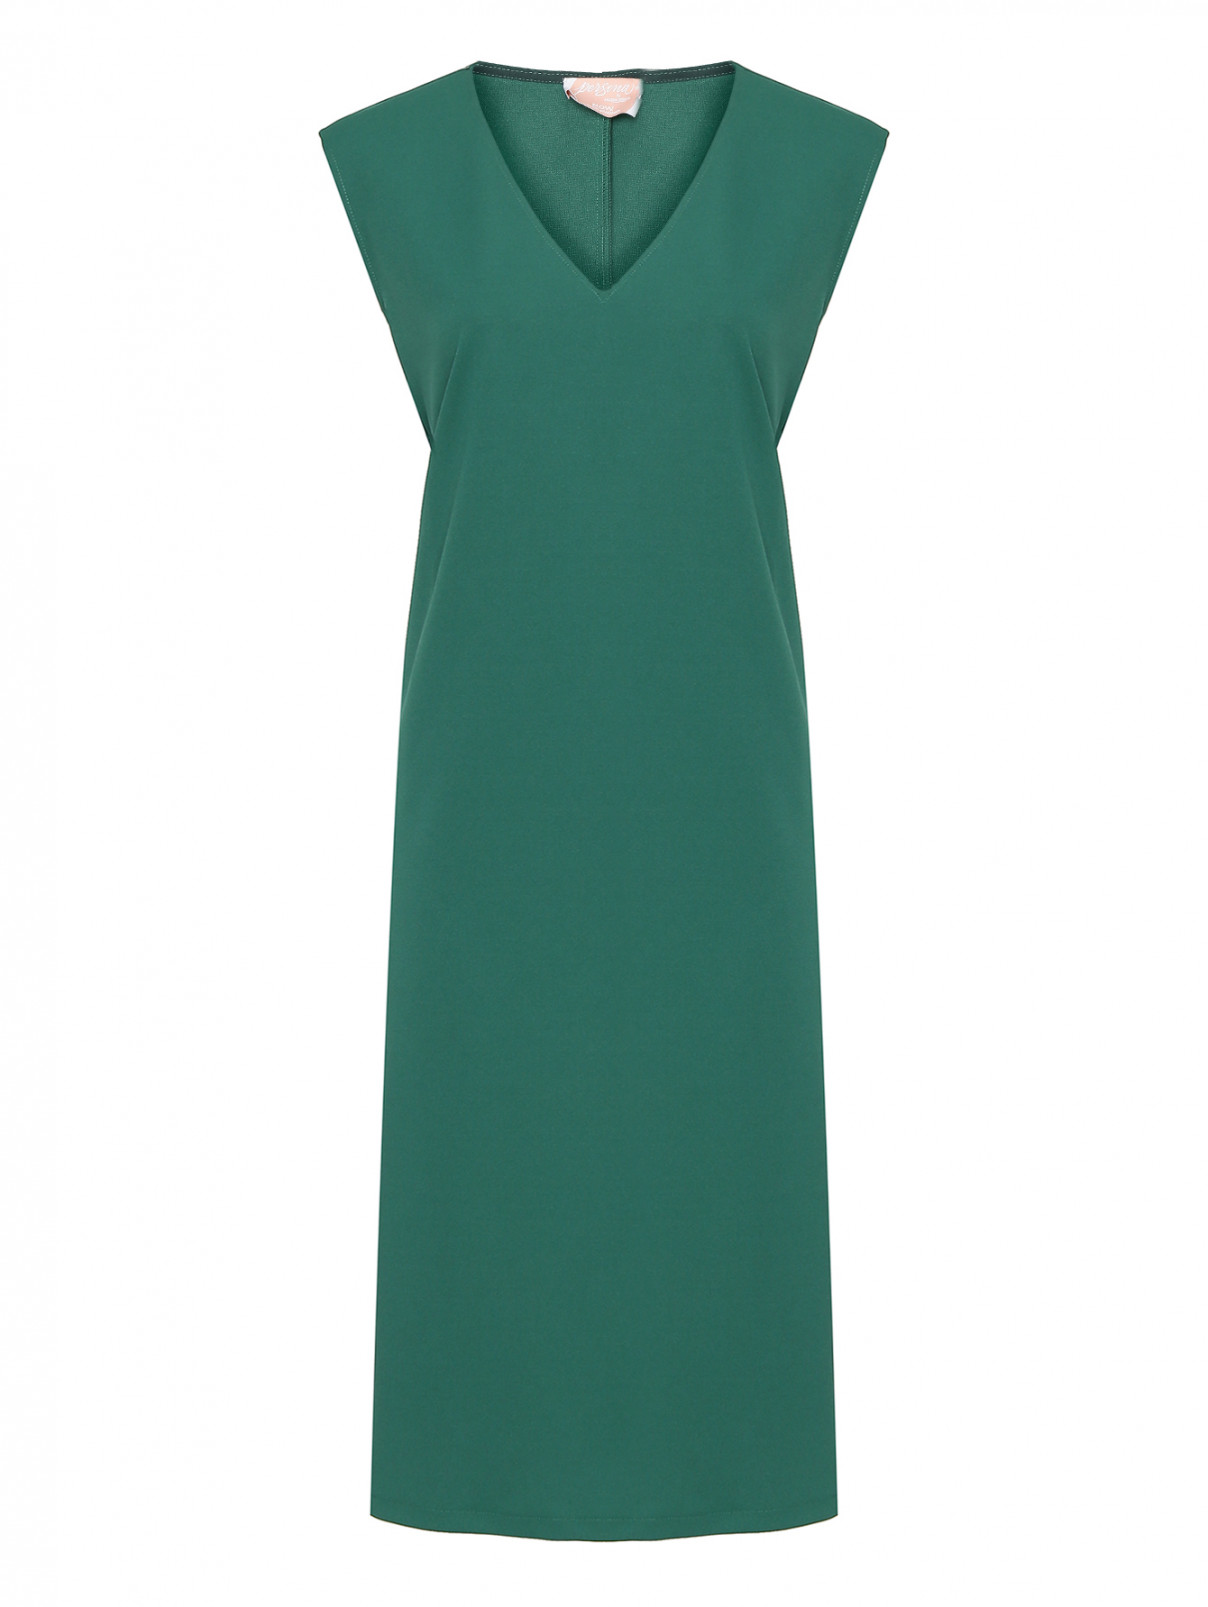 Платье с V-образным вырезом Persona by Marina Rinaldi  –  Общий вид  – Цвет:  Зеленый